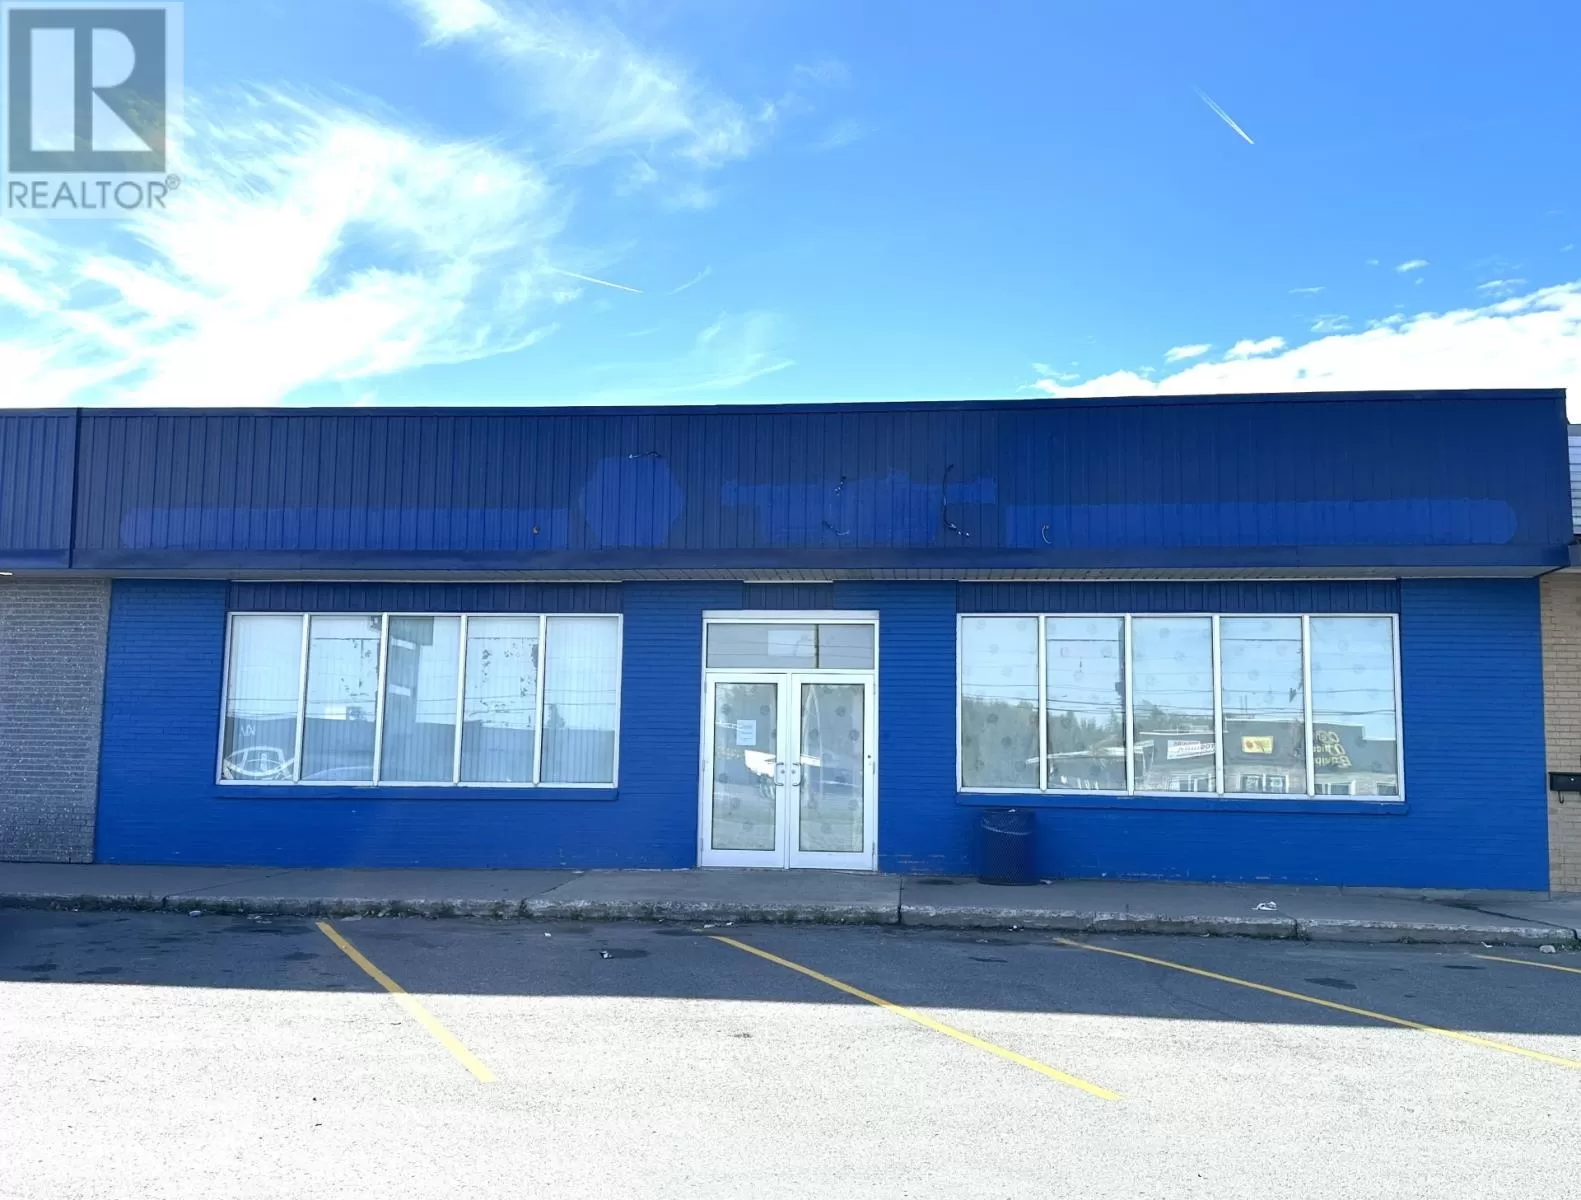 Retail for rent: 310 Airport Boulevard, Gander, Newfoundland & Labrador A1V 1X5